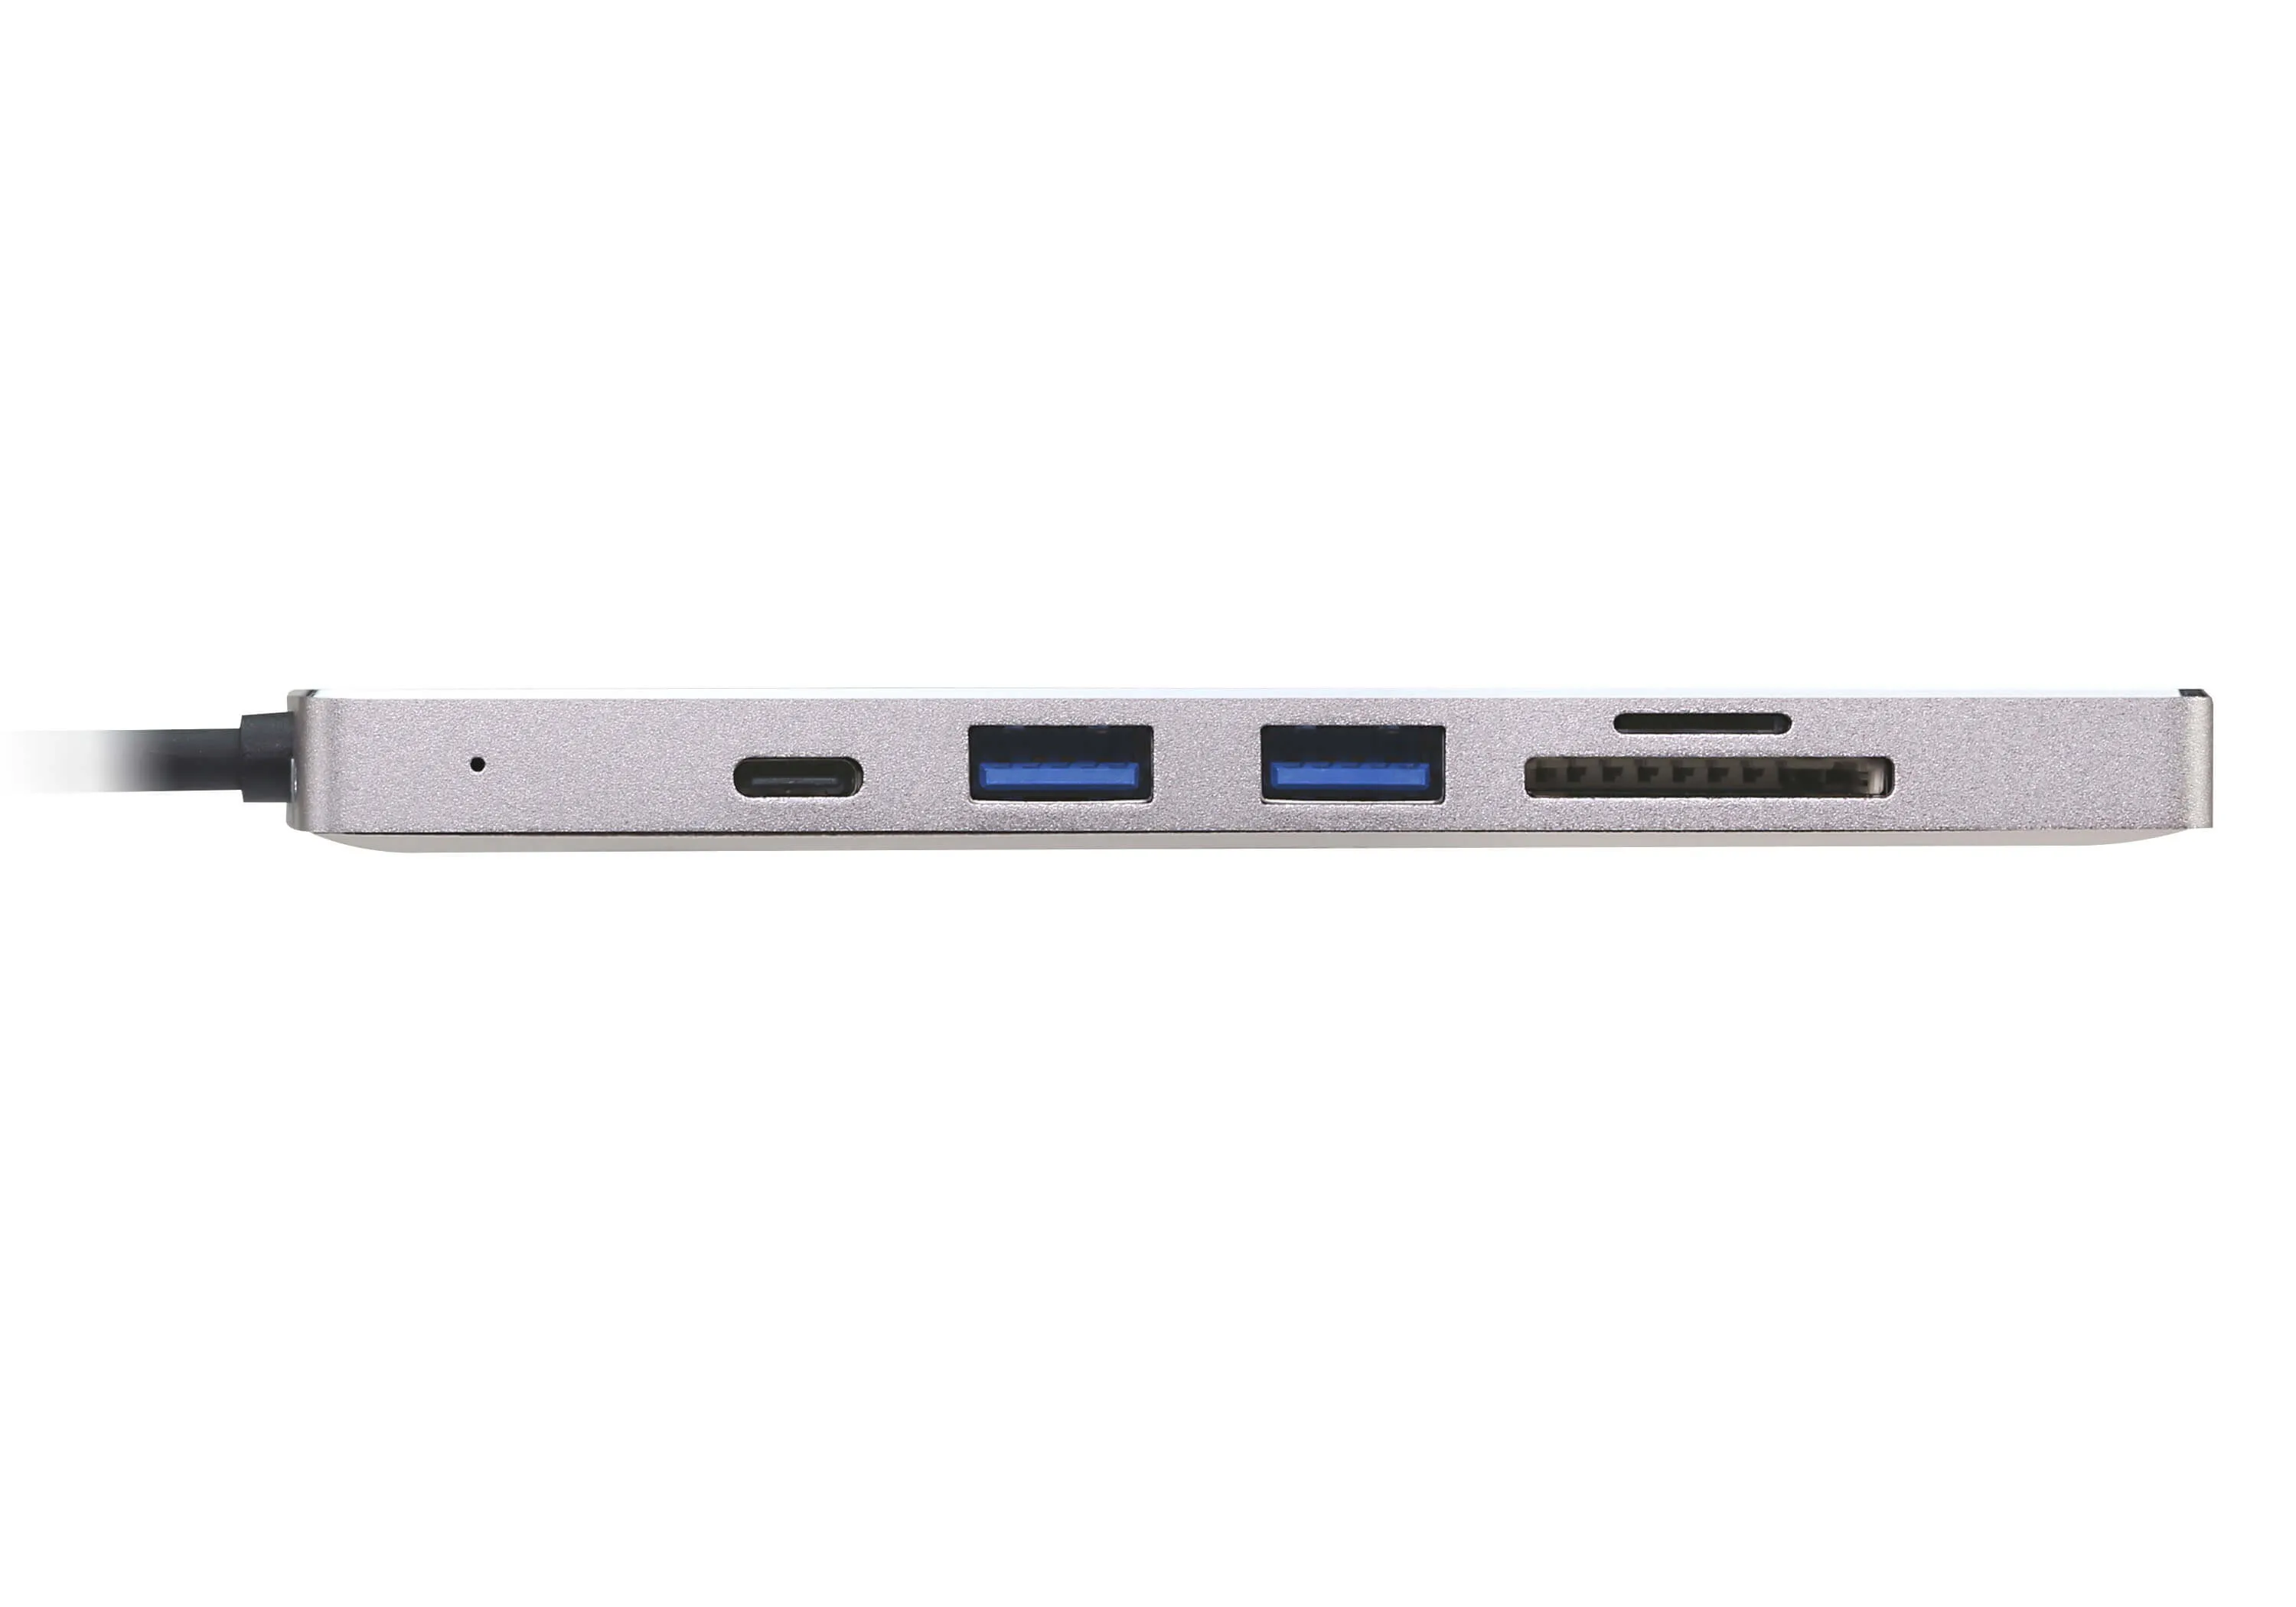 Vente ATEN Mini station d’accueil multiport USB-C avec transfert ATEN au meilleur prix - visuel 2